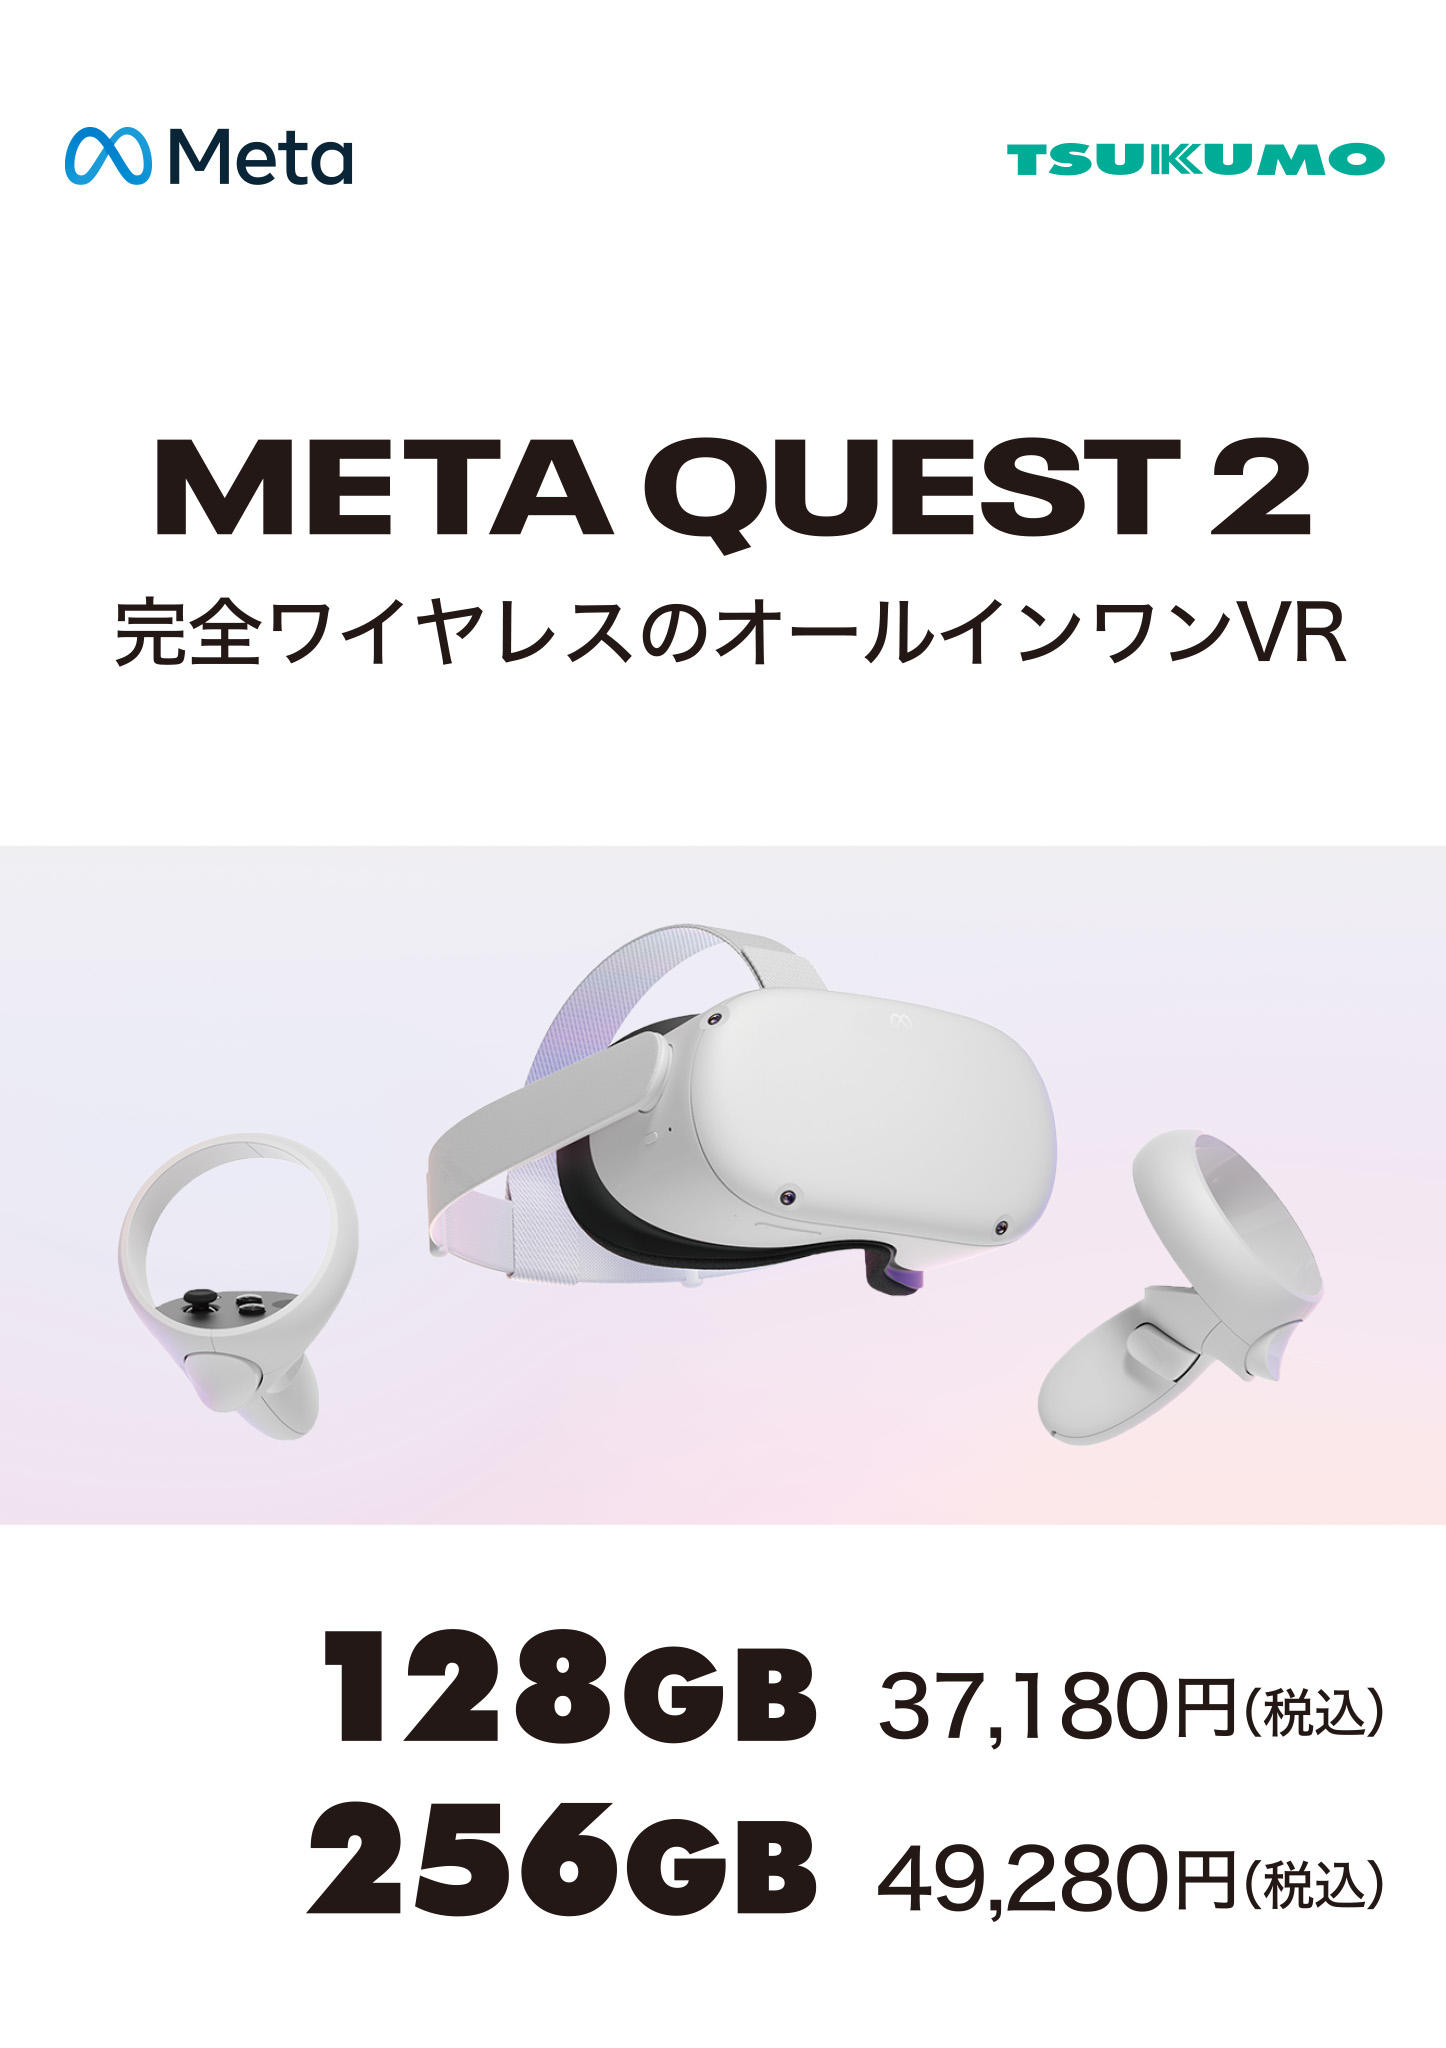 Meta Quest 2―完全ワイヤレスのオールインワンVRヘッドセット―256GB